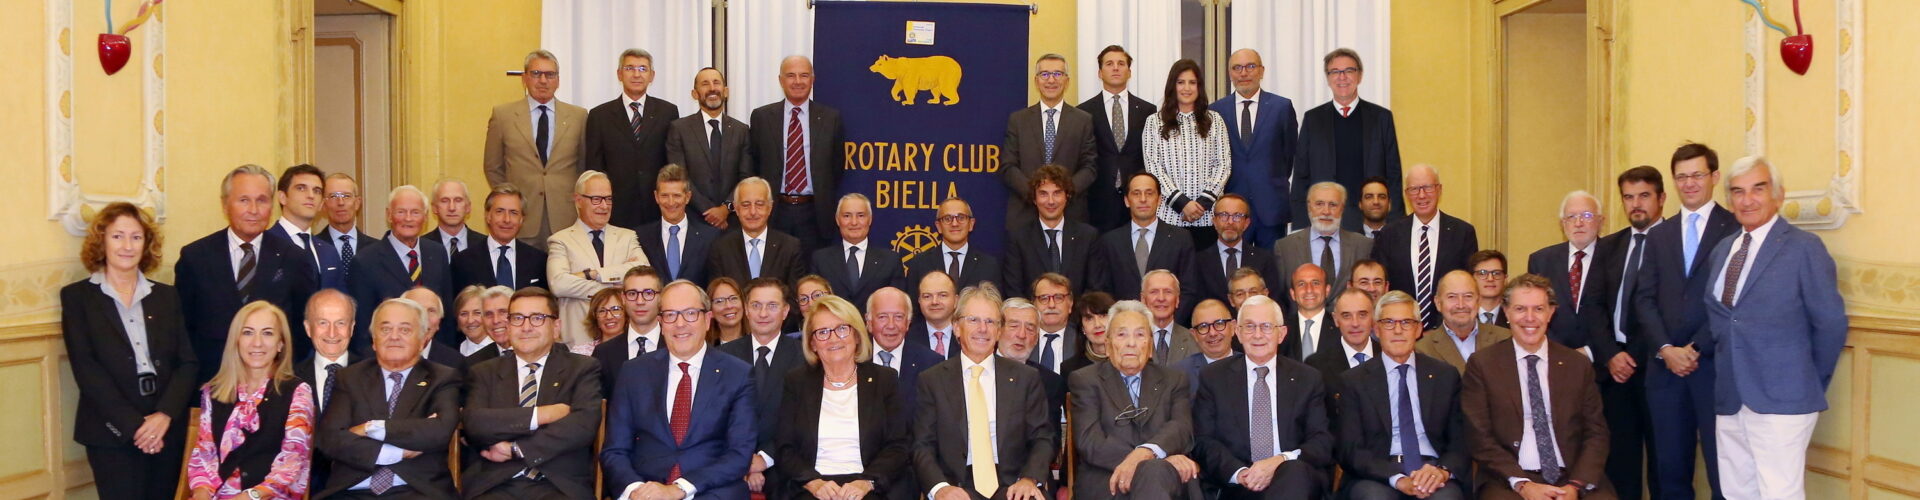 Franciosi porta il Rotary di Biella all’85mo compleanno